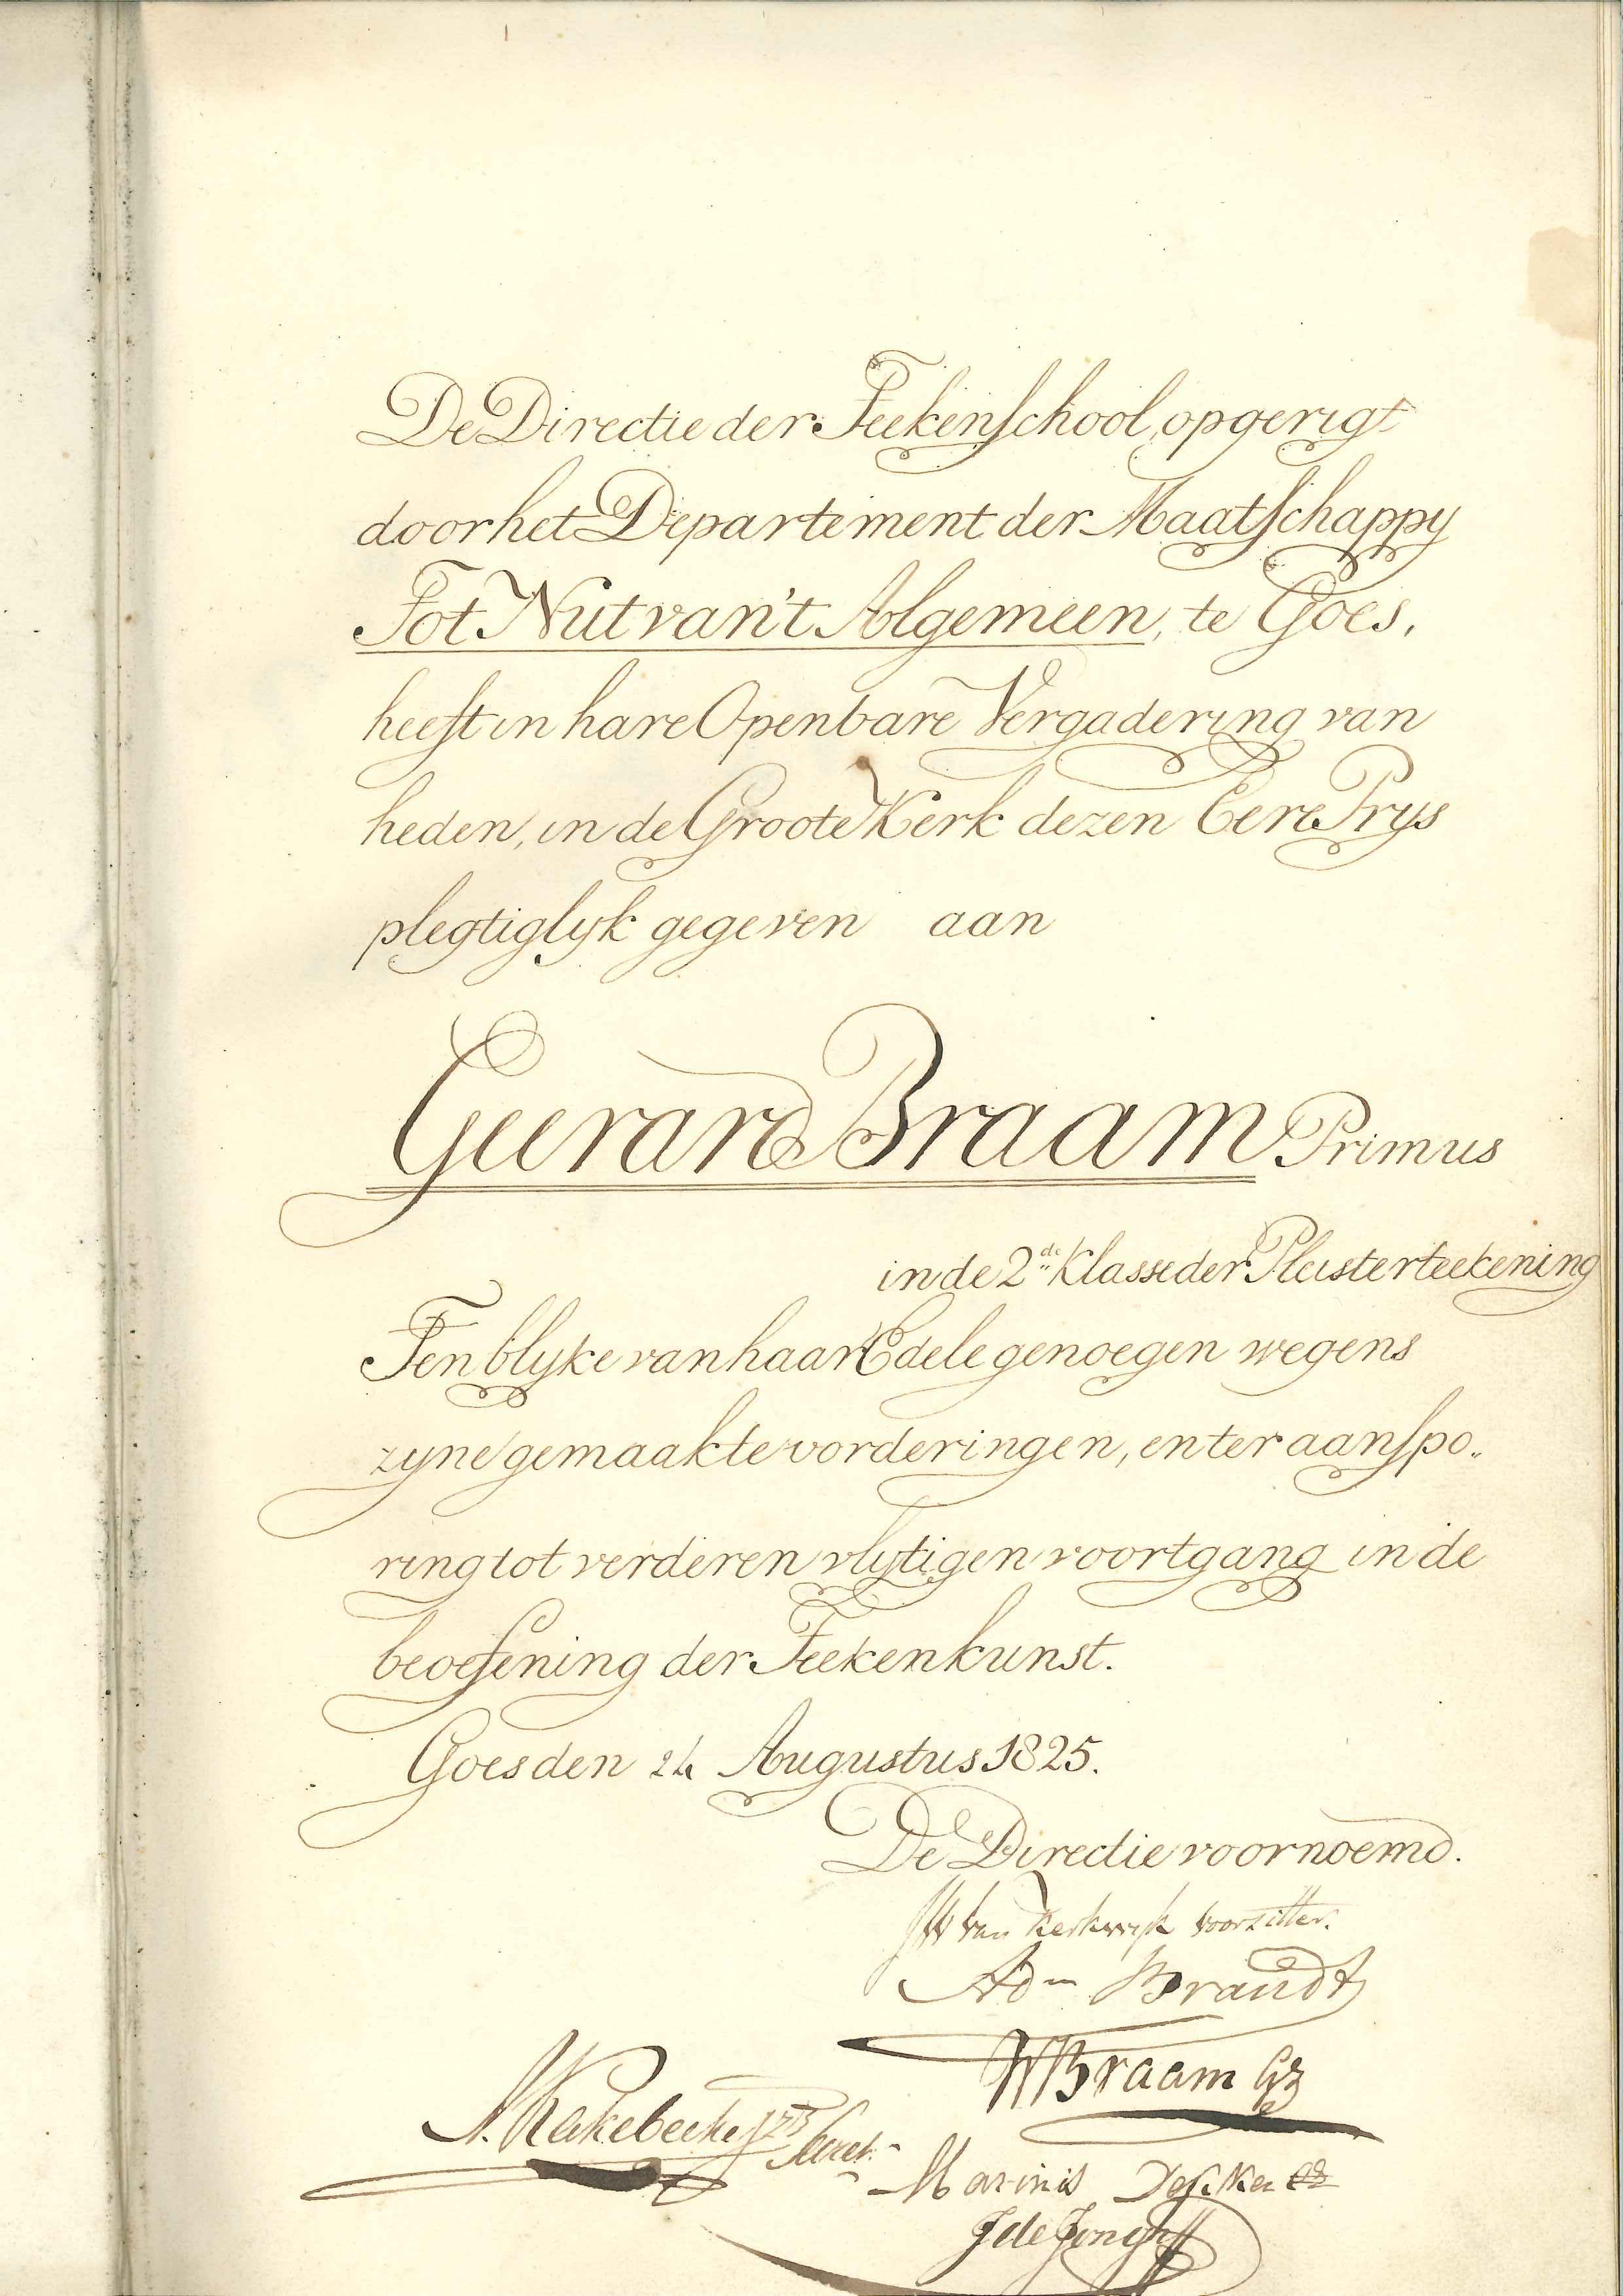 Ereprijs voor Geerard Braam, 1825, in 'Verz. Mans- en vrouwenstanden', Rotterdam 1818. GAG.Arch.Nut, inv.nr. 94.